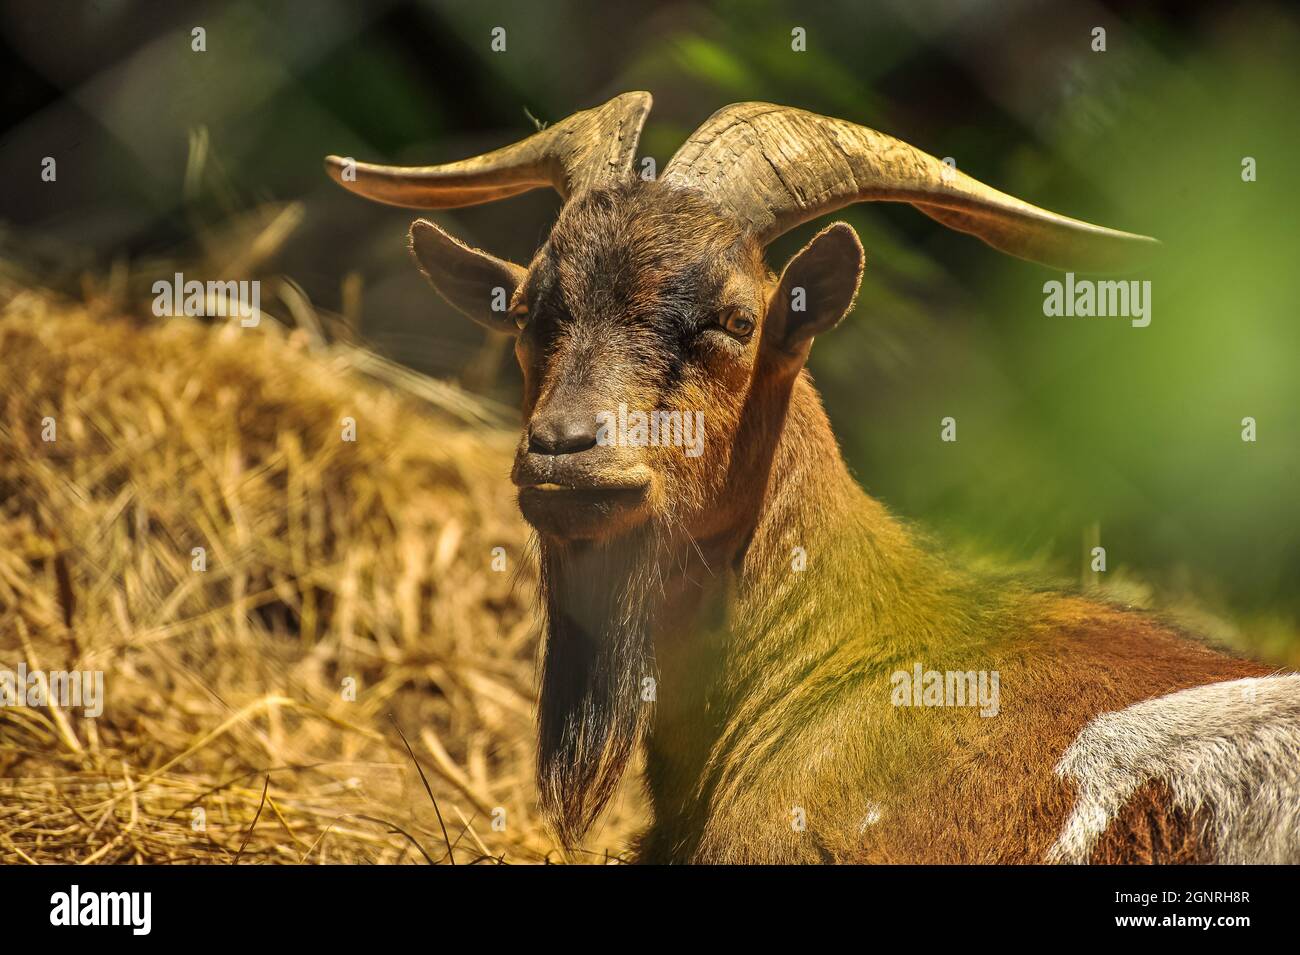 Zoo Scenery - Ziege auf der Suche nach Nahrung Stockfoto